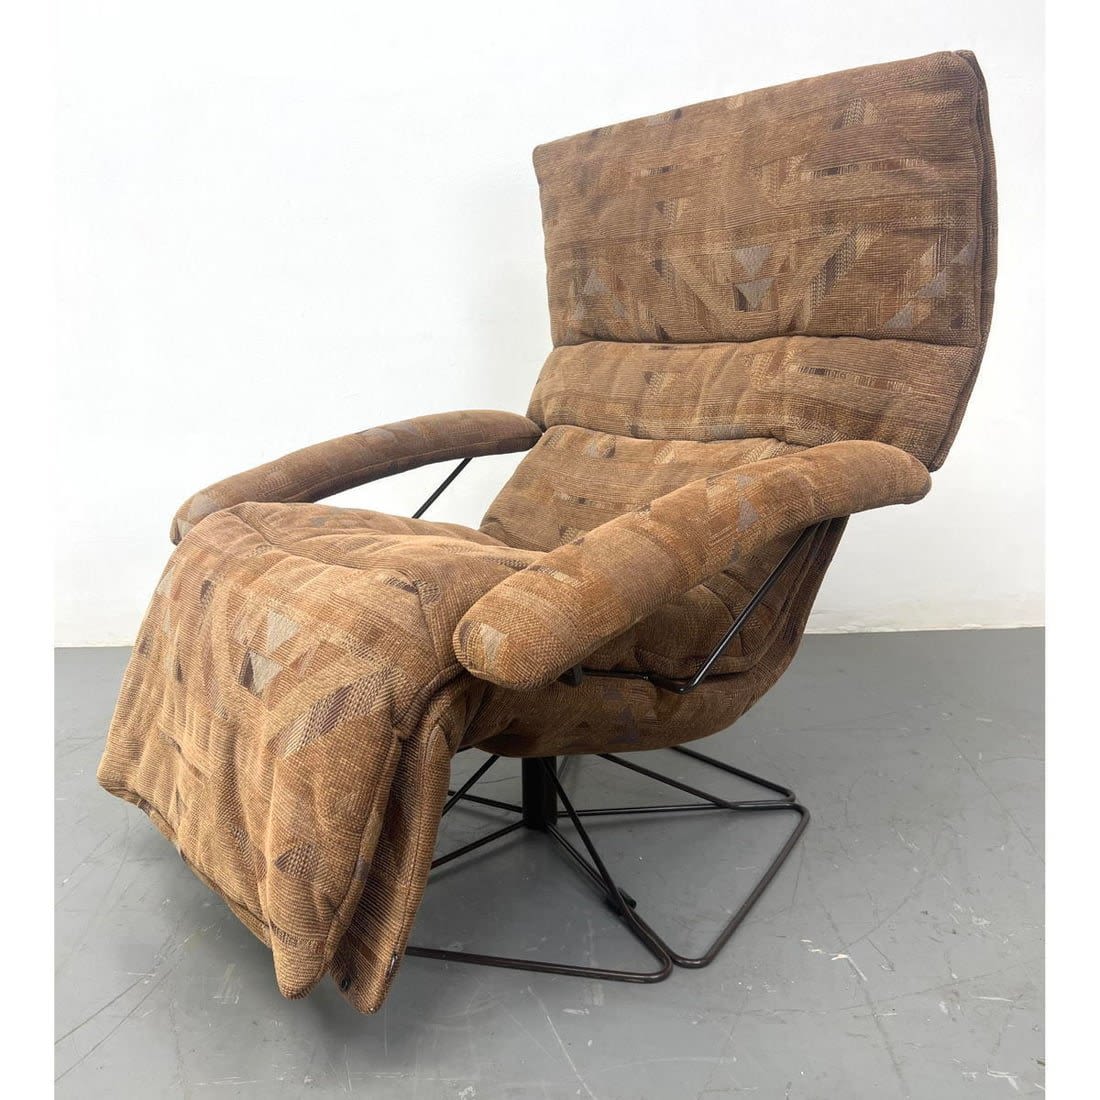 JORI Belgium Modernist Lounge Chair 362e09